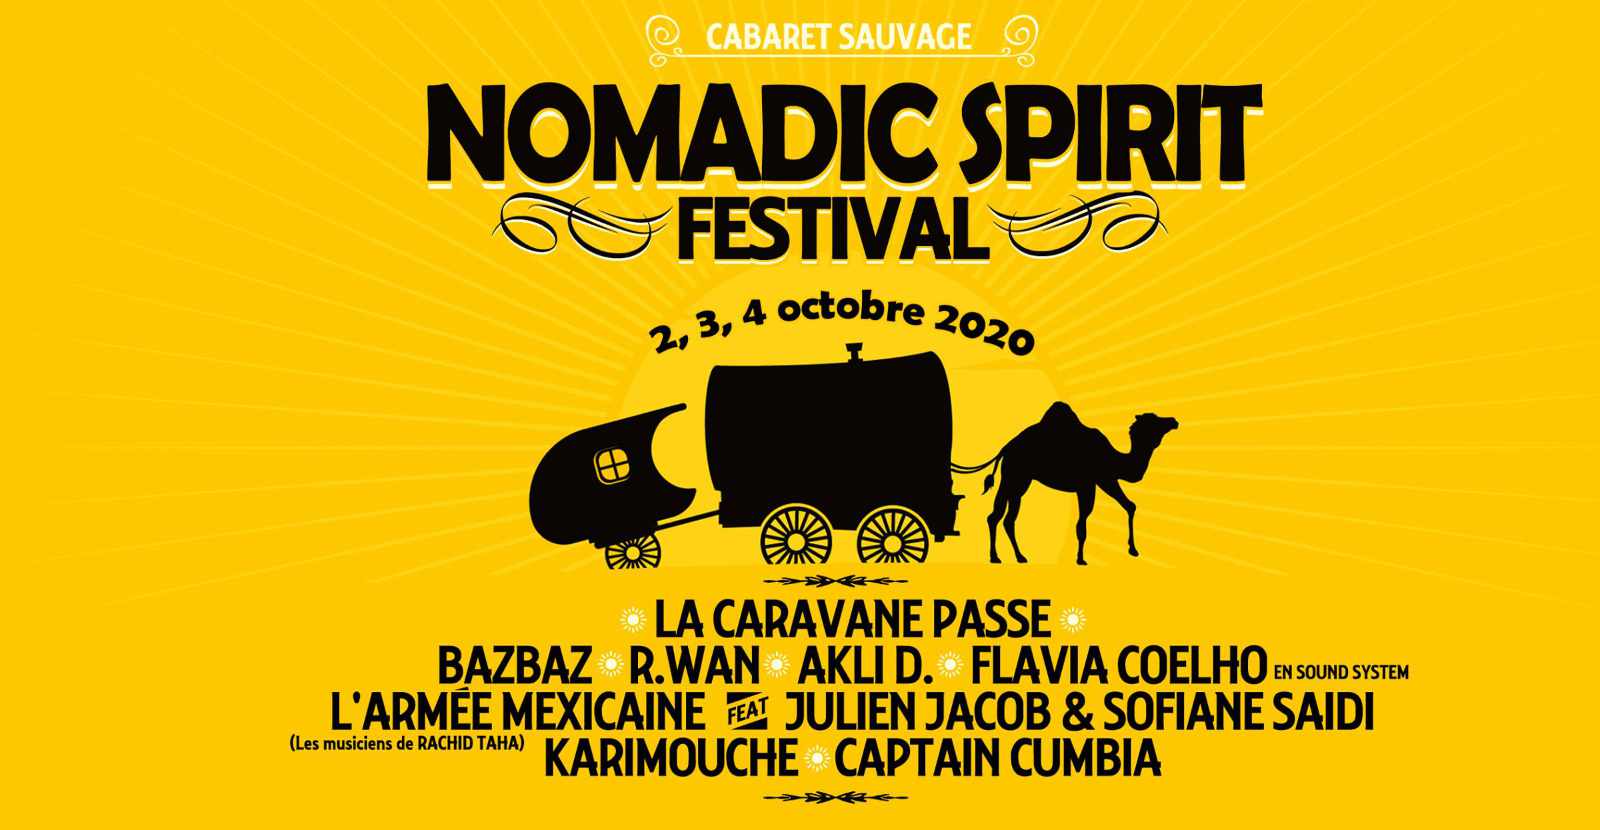 Nomadic Spirit festival